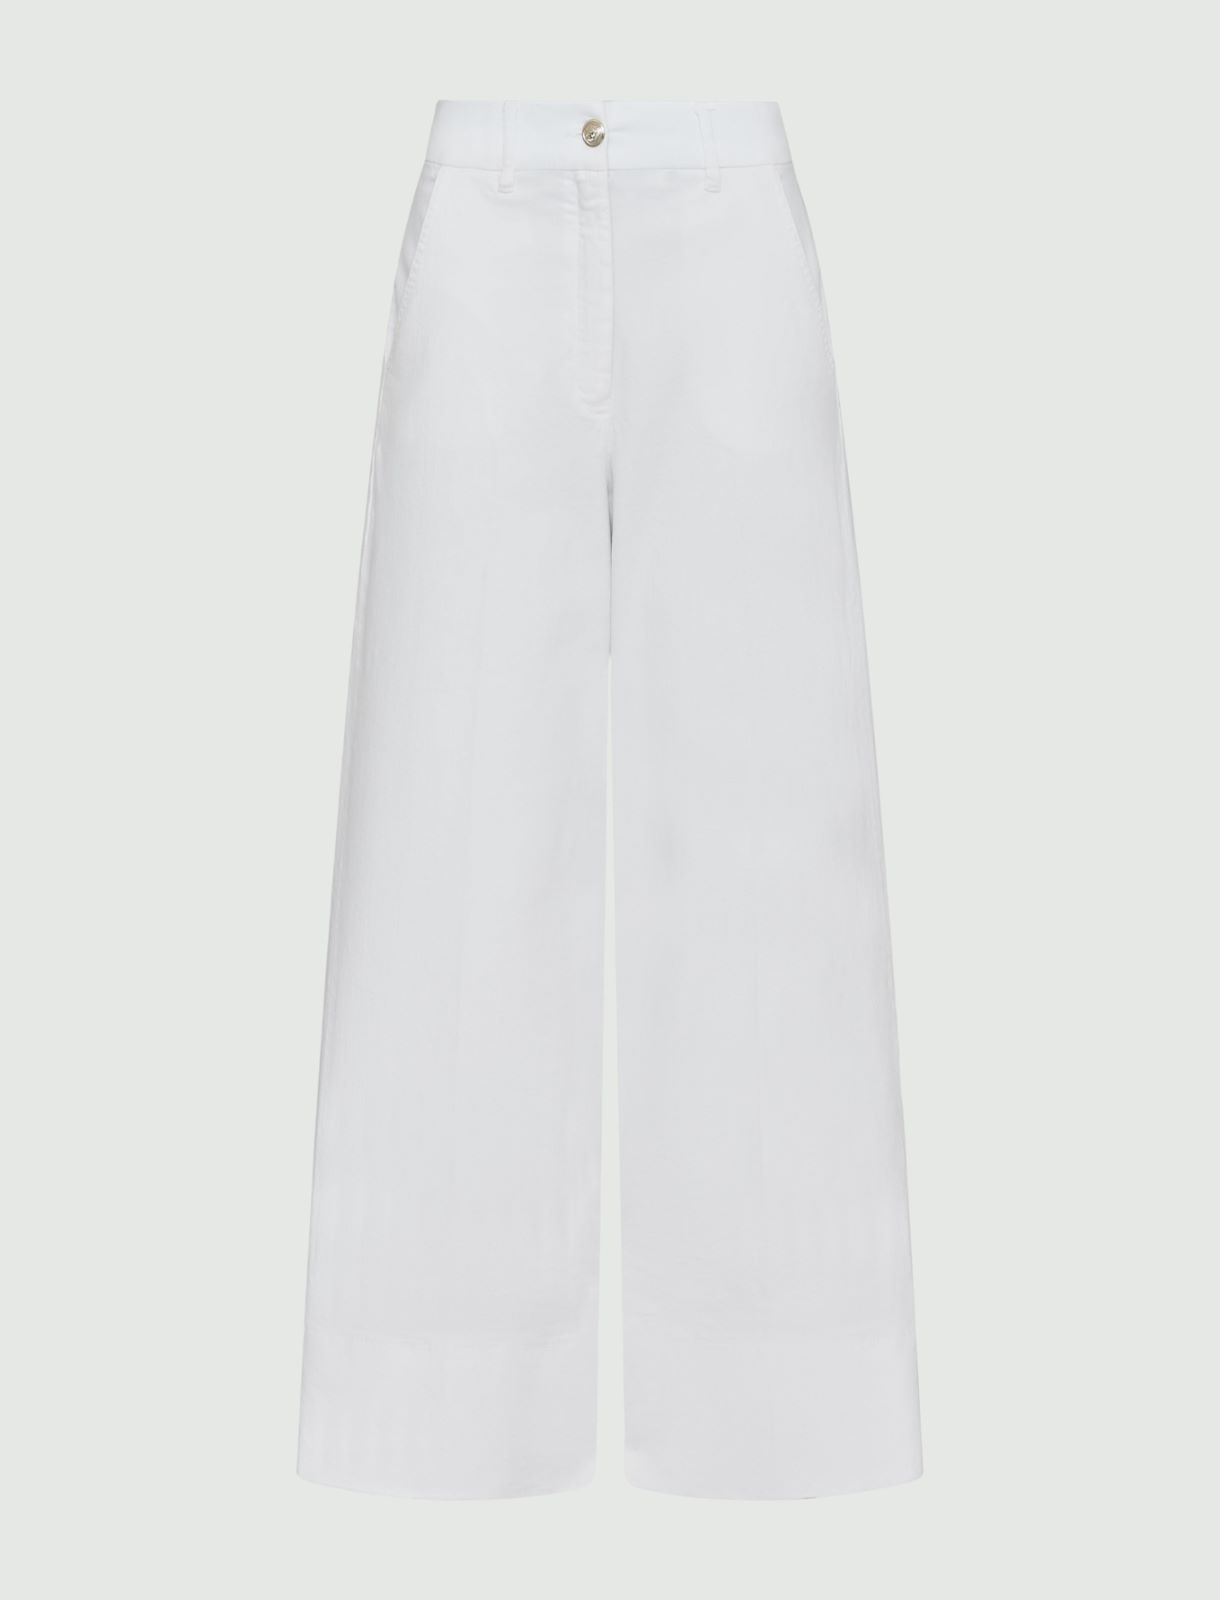 Wide-leg trousers, white | Marella